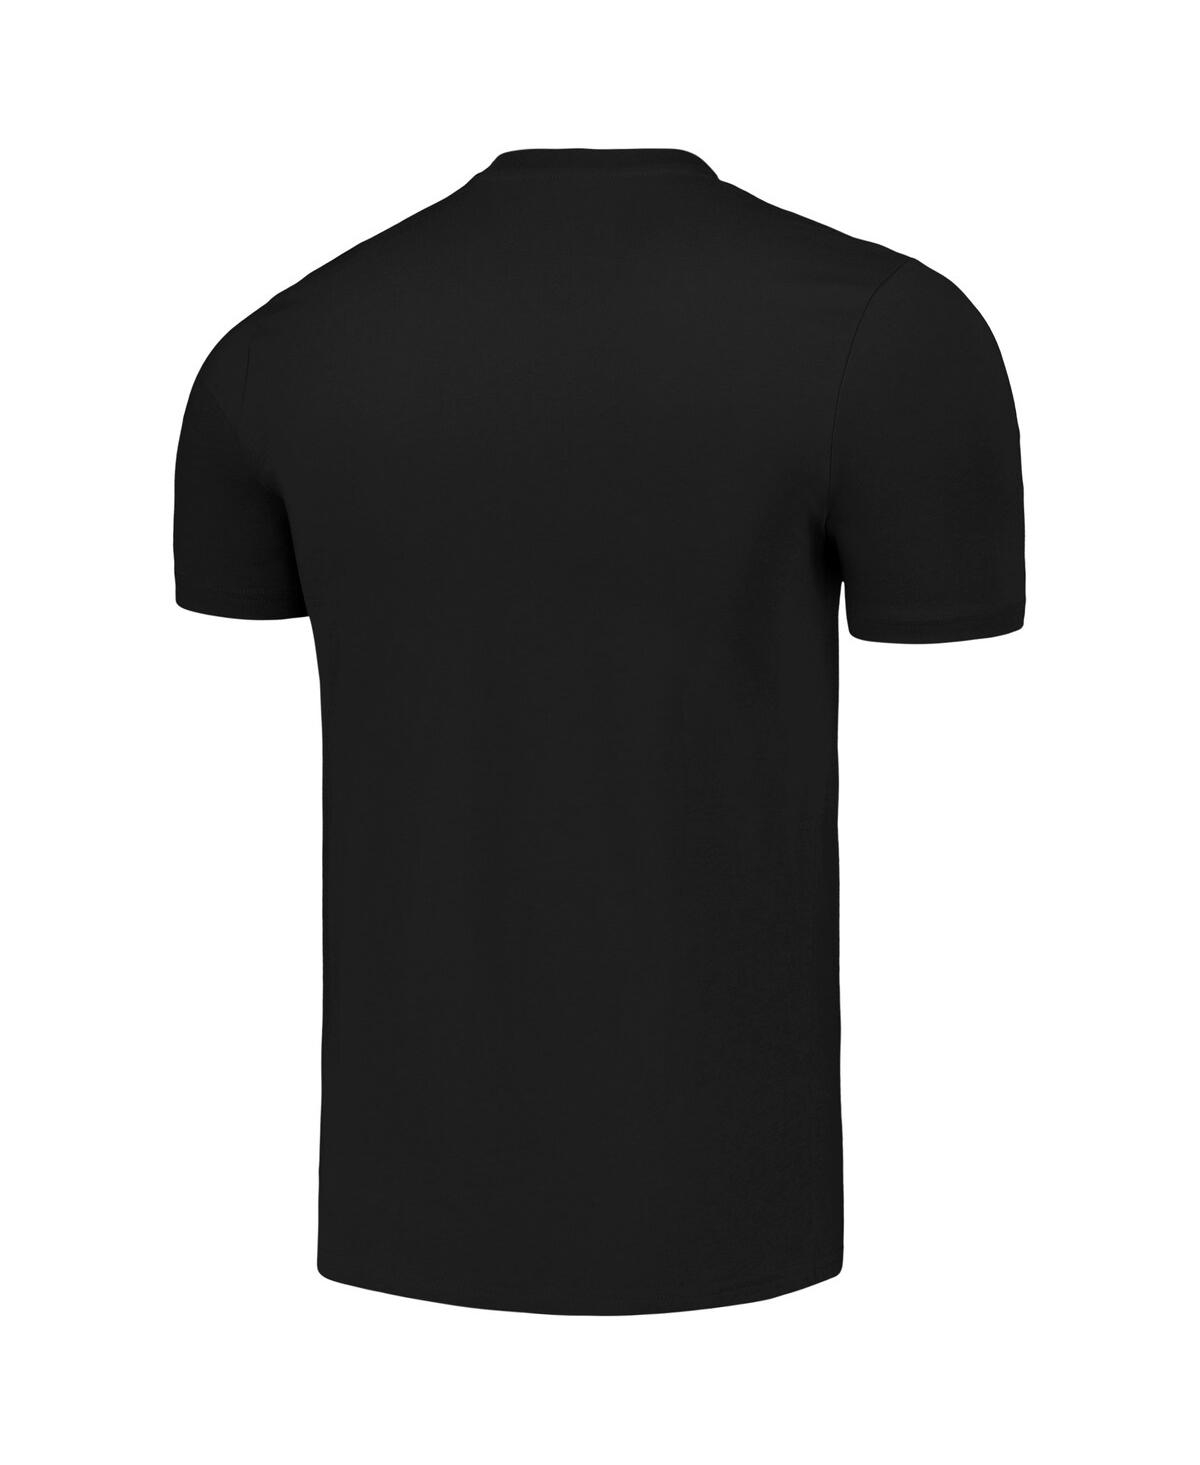 Shop American Classics Men's Black Motorhead Snaggletooth T-shirt